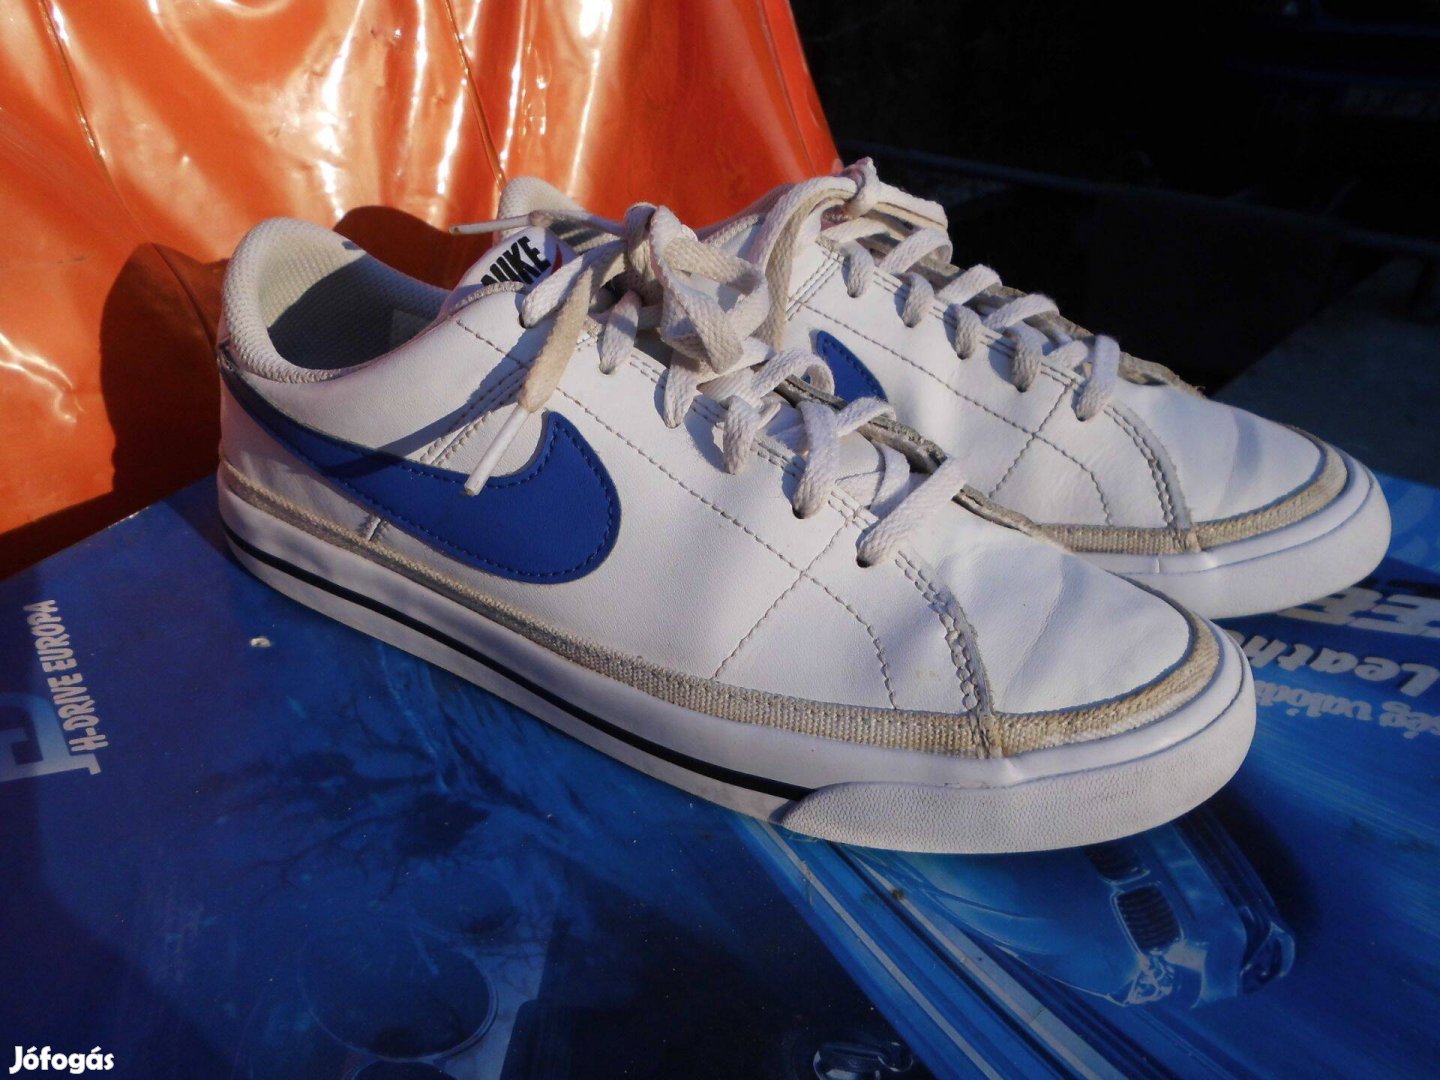 Nike Court fehér-kék bőr 39-es utcai cipő eladó,